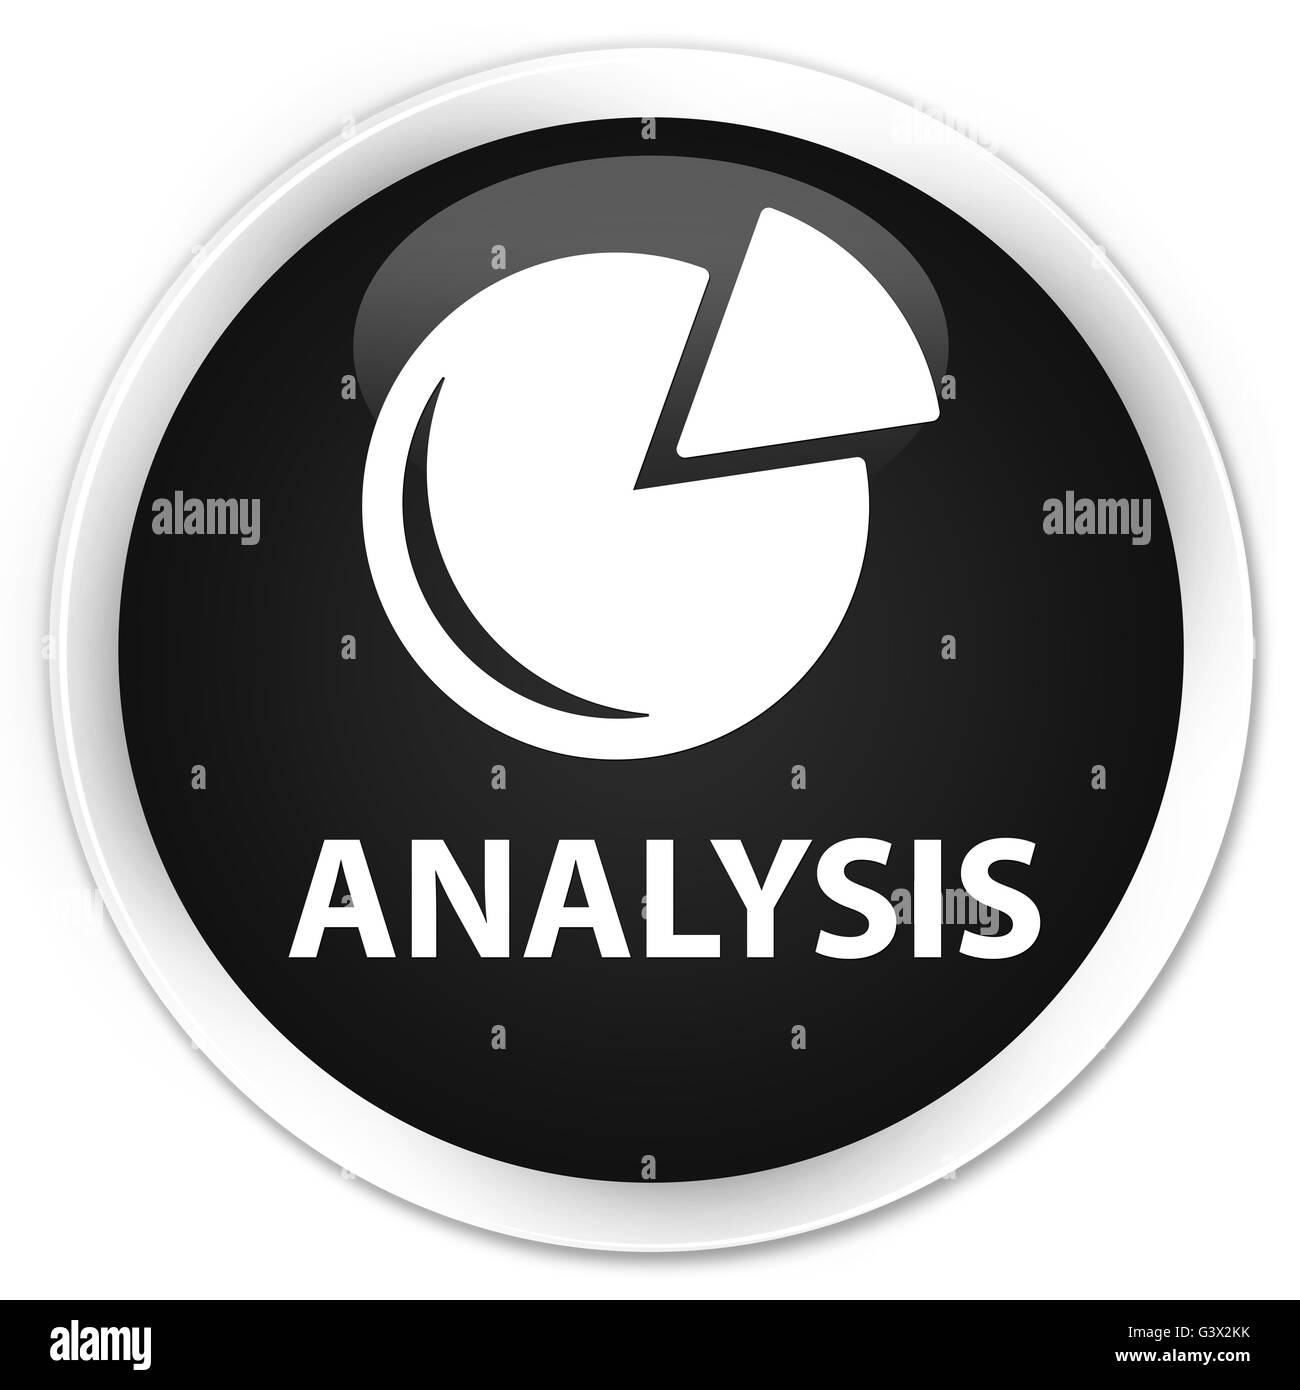 Analytics (symbole graphique) isolé sur le bouton rond noir premium abstract illustration Banque D'Images